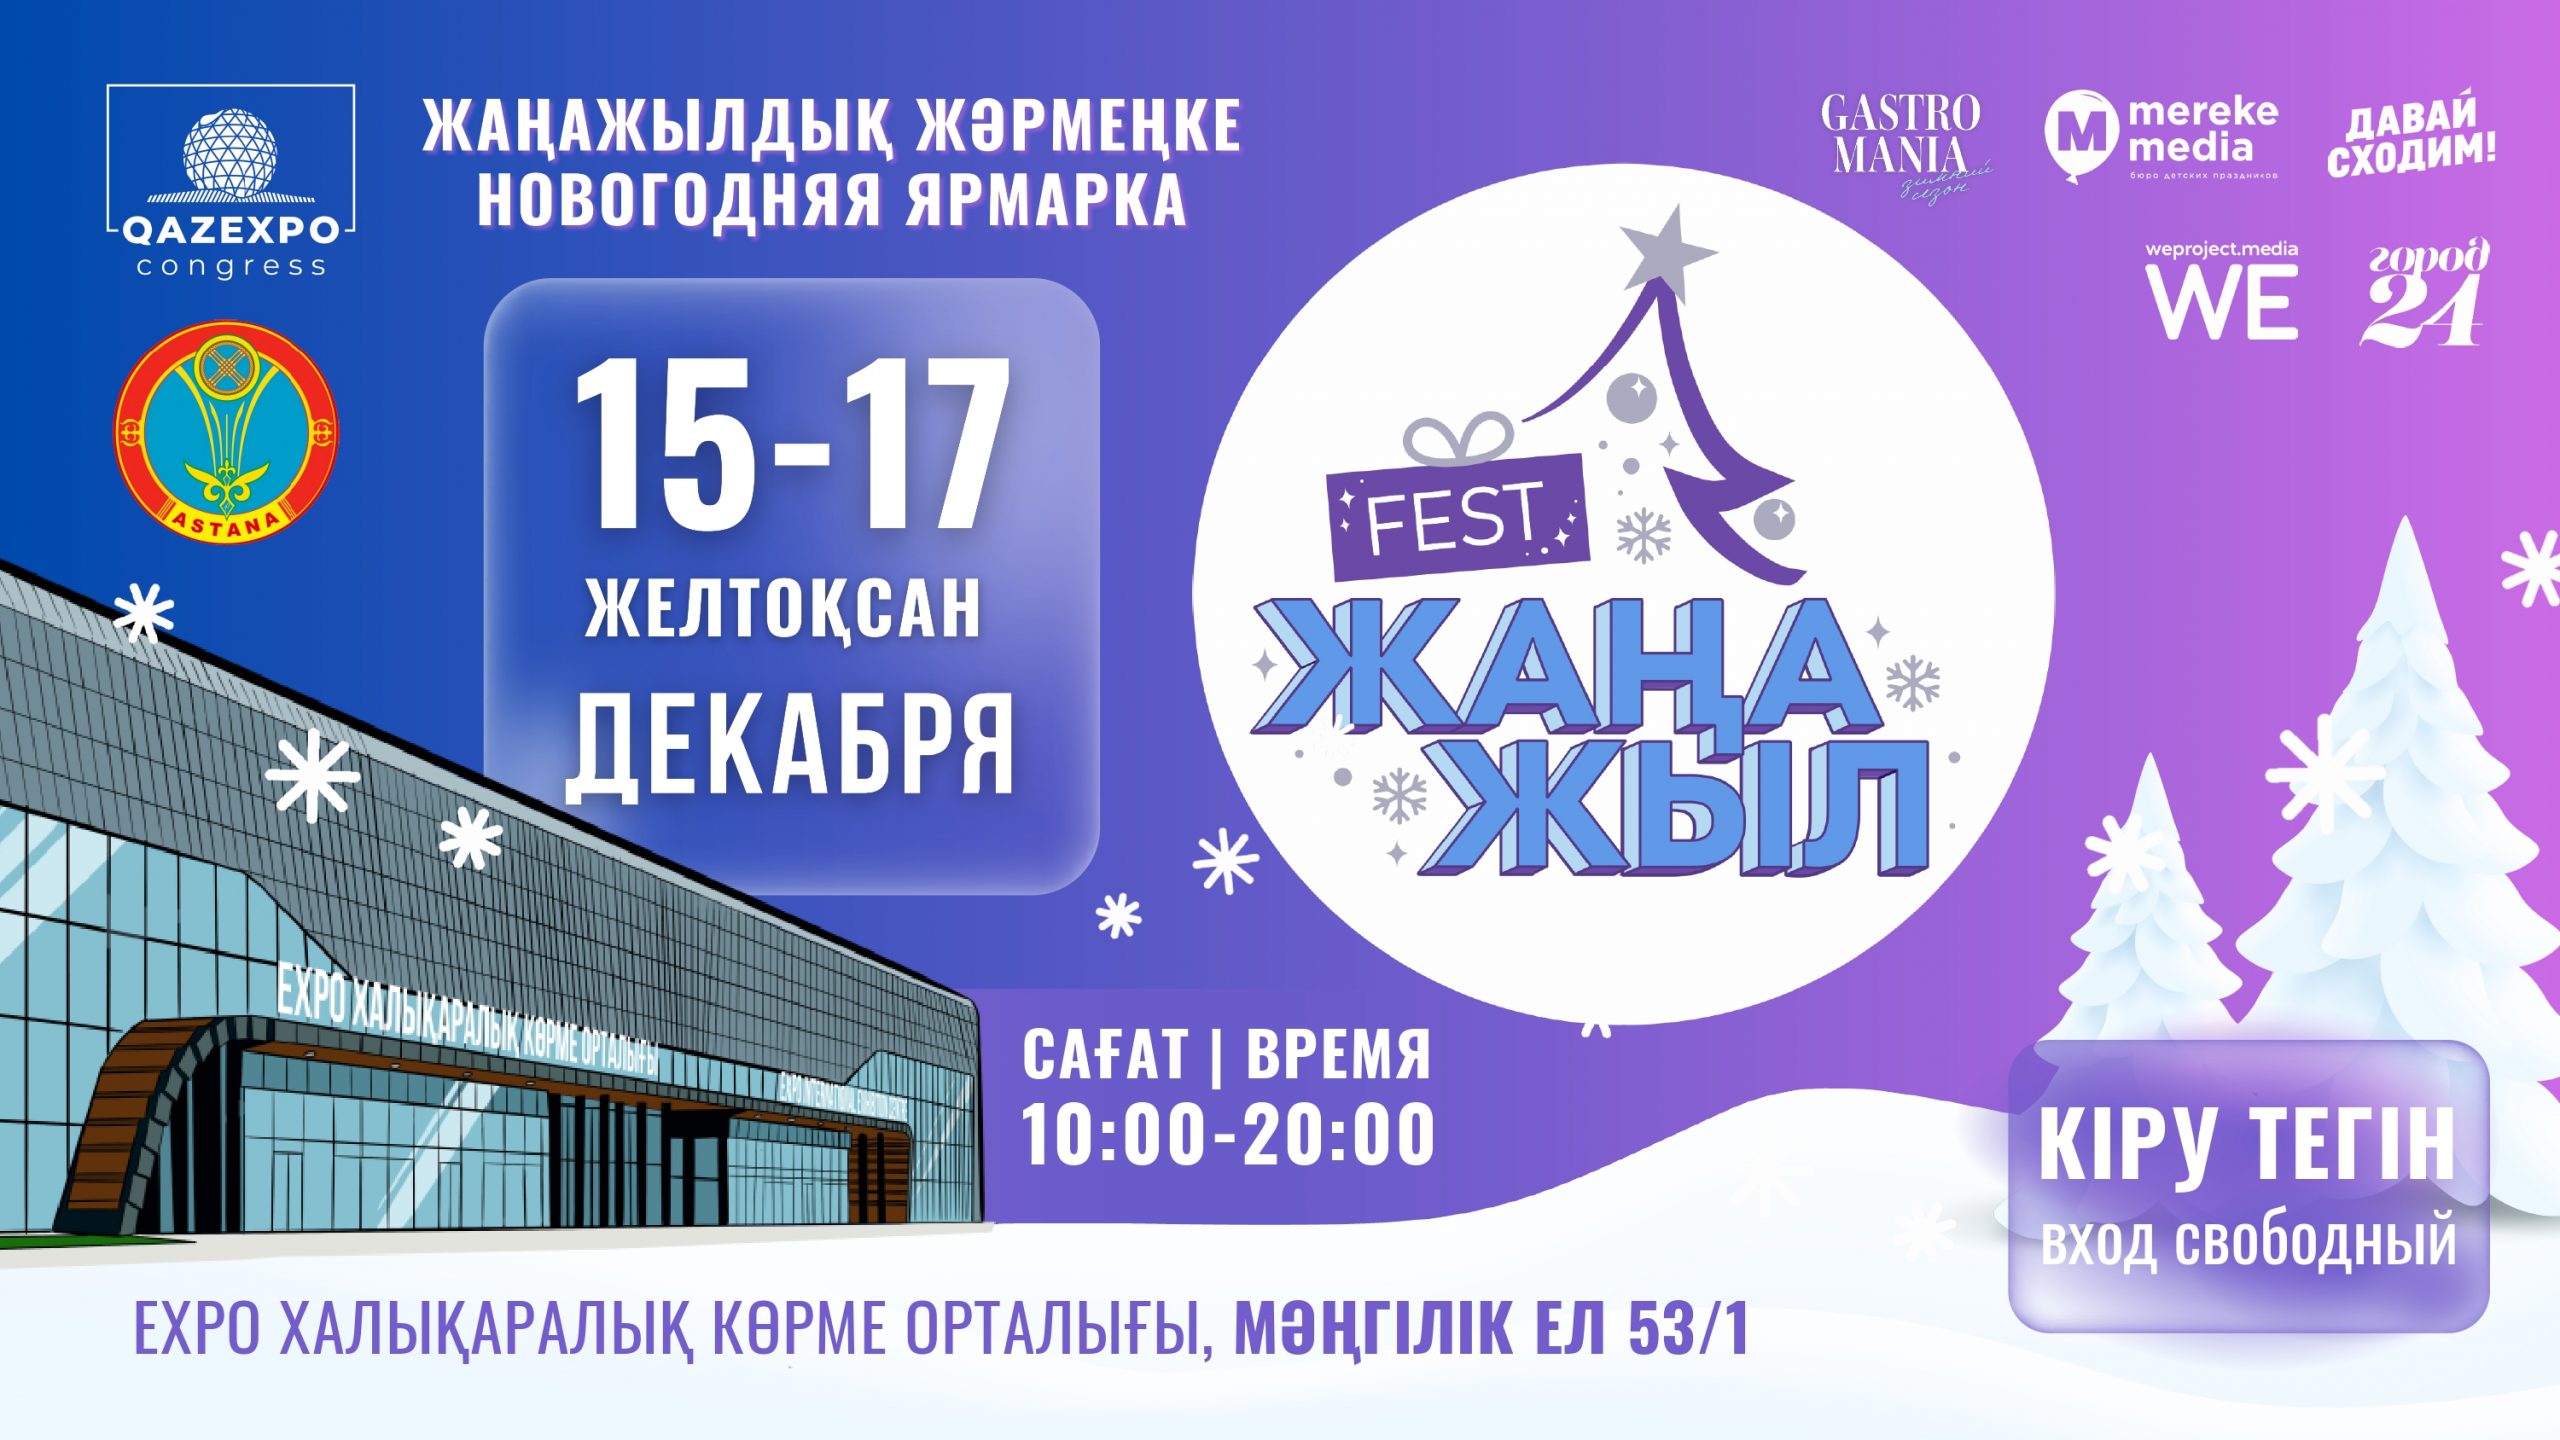 EXPO ХКО-да «Жаңа жыл Fest & Gastromania» жаңажылдық жәрмеңке-фестивалі өтеді